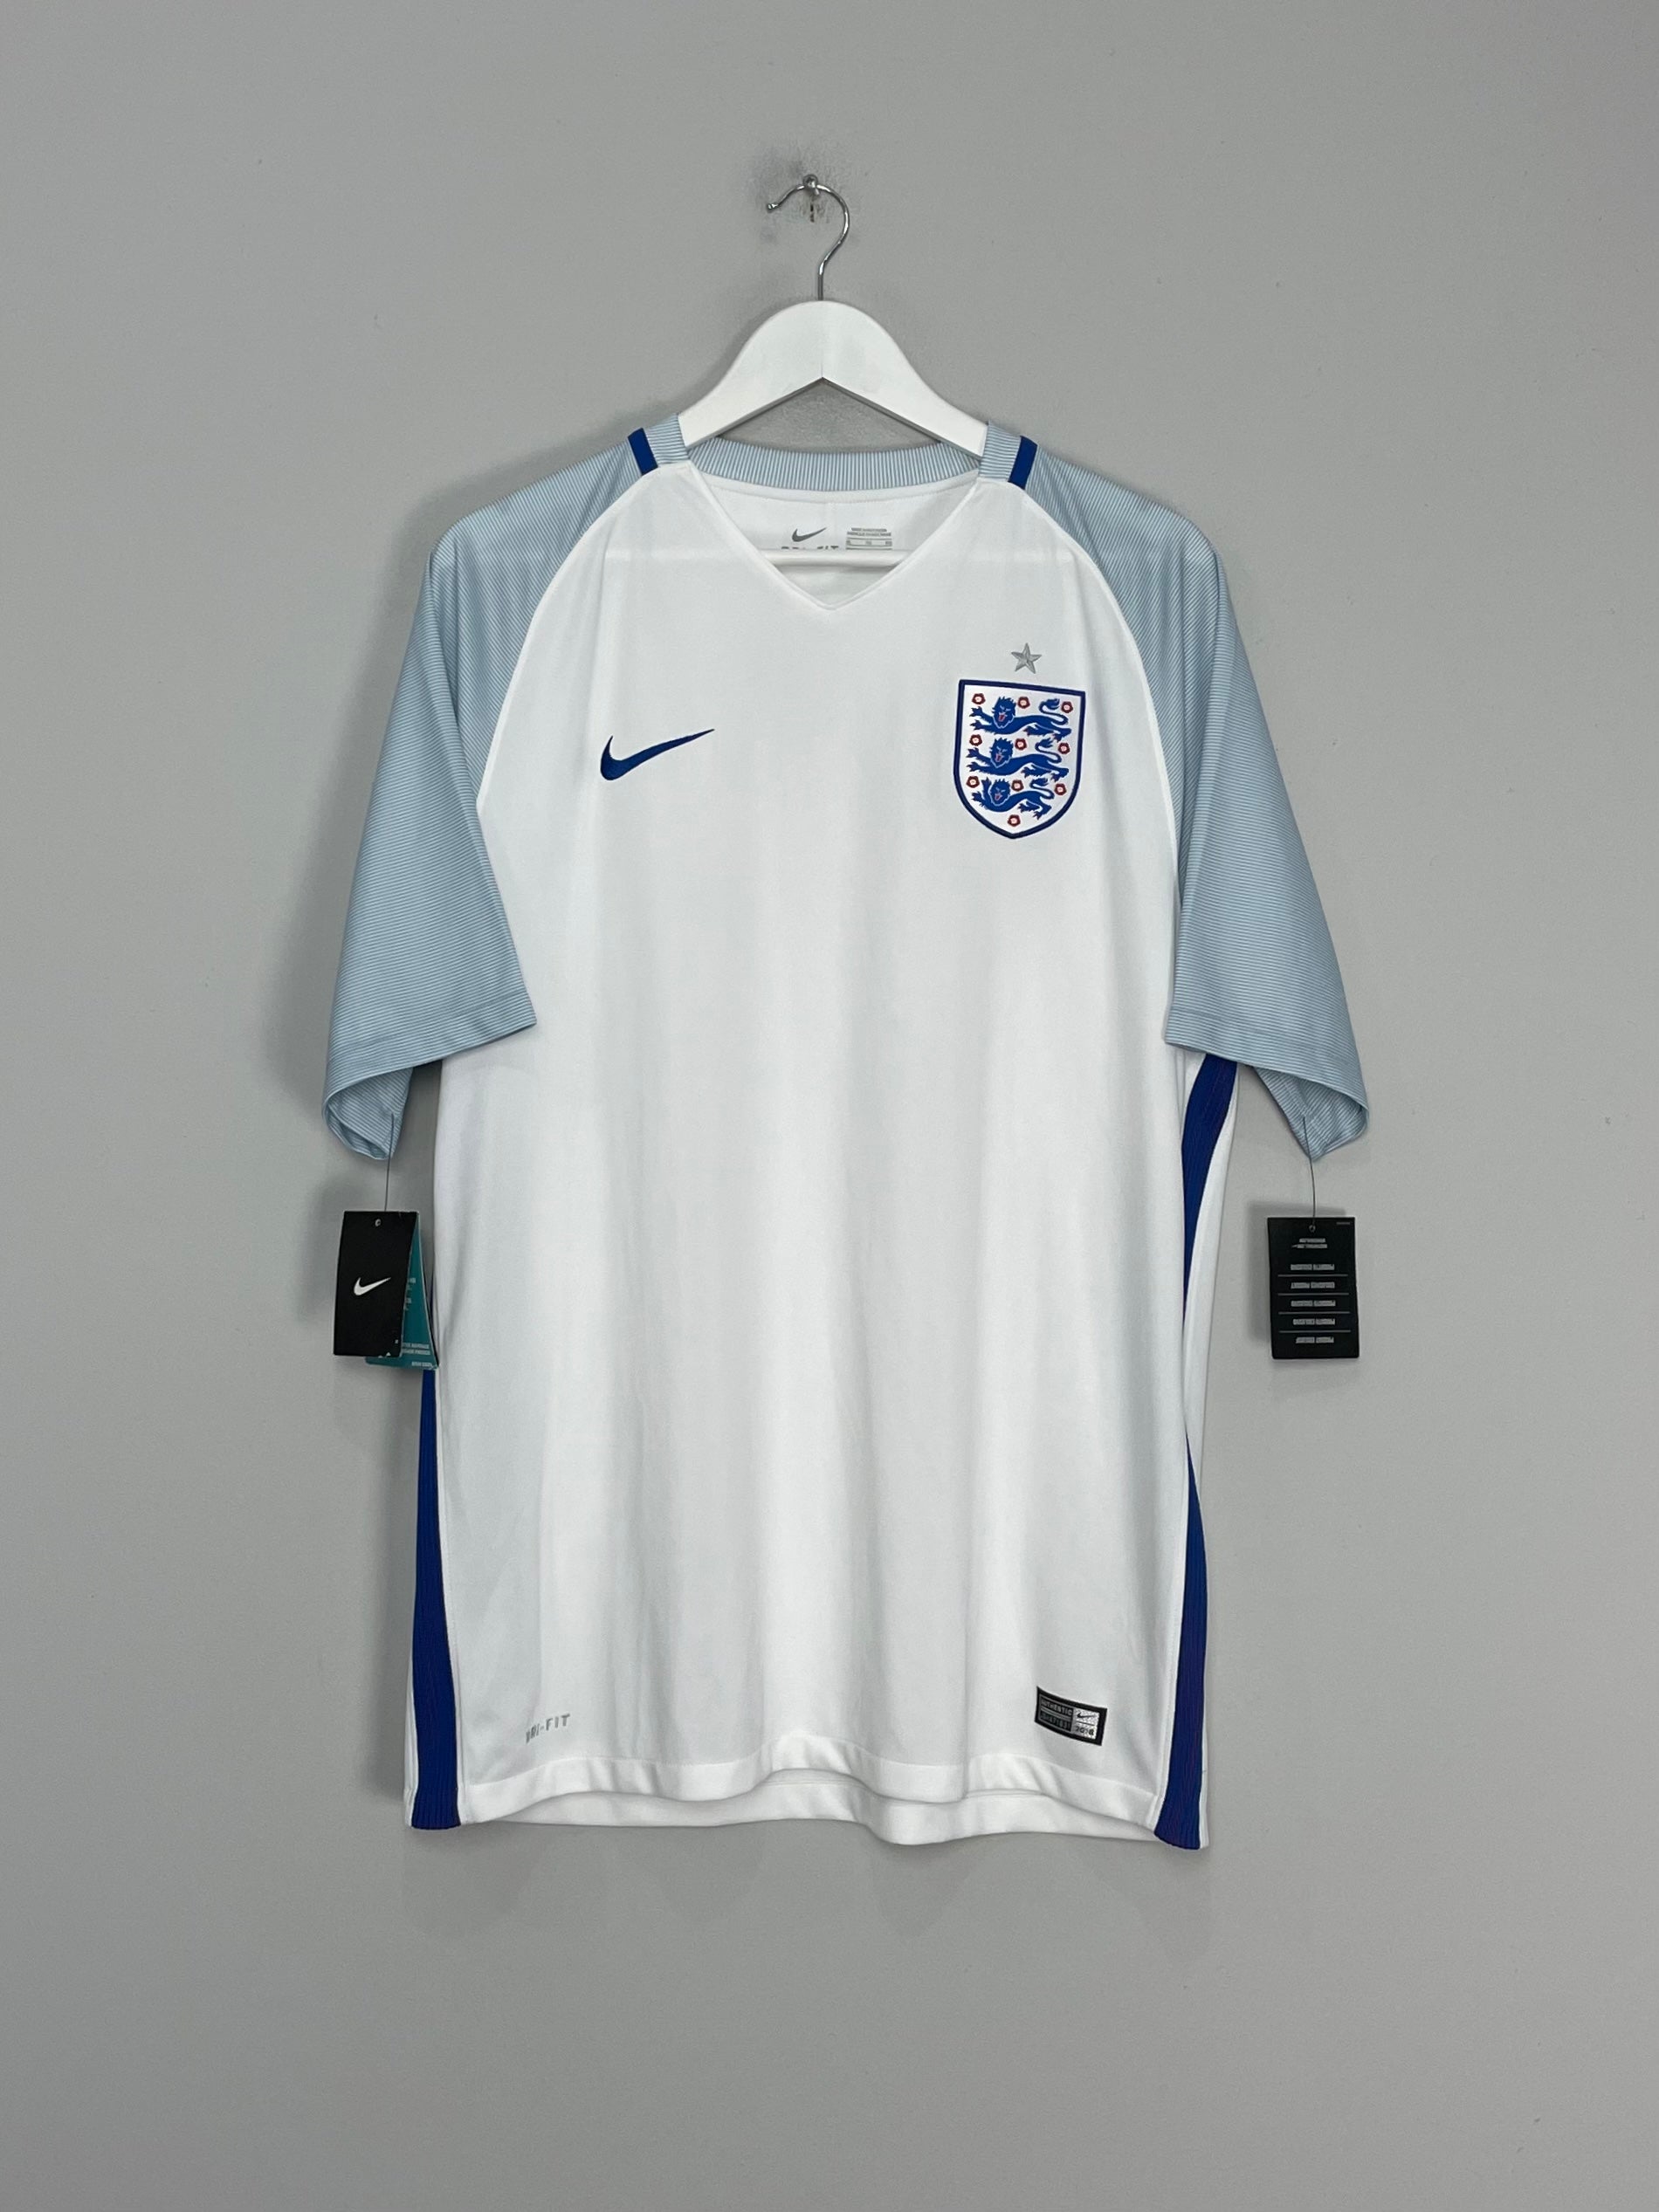 England retro soccer apparel collection